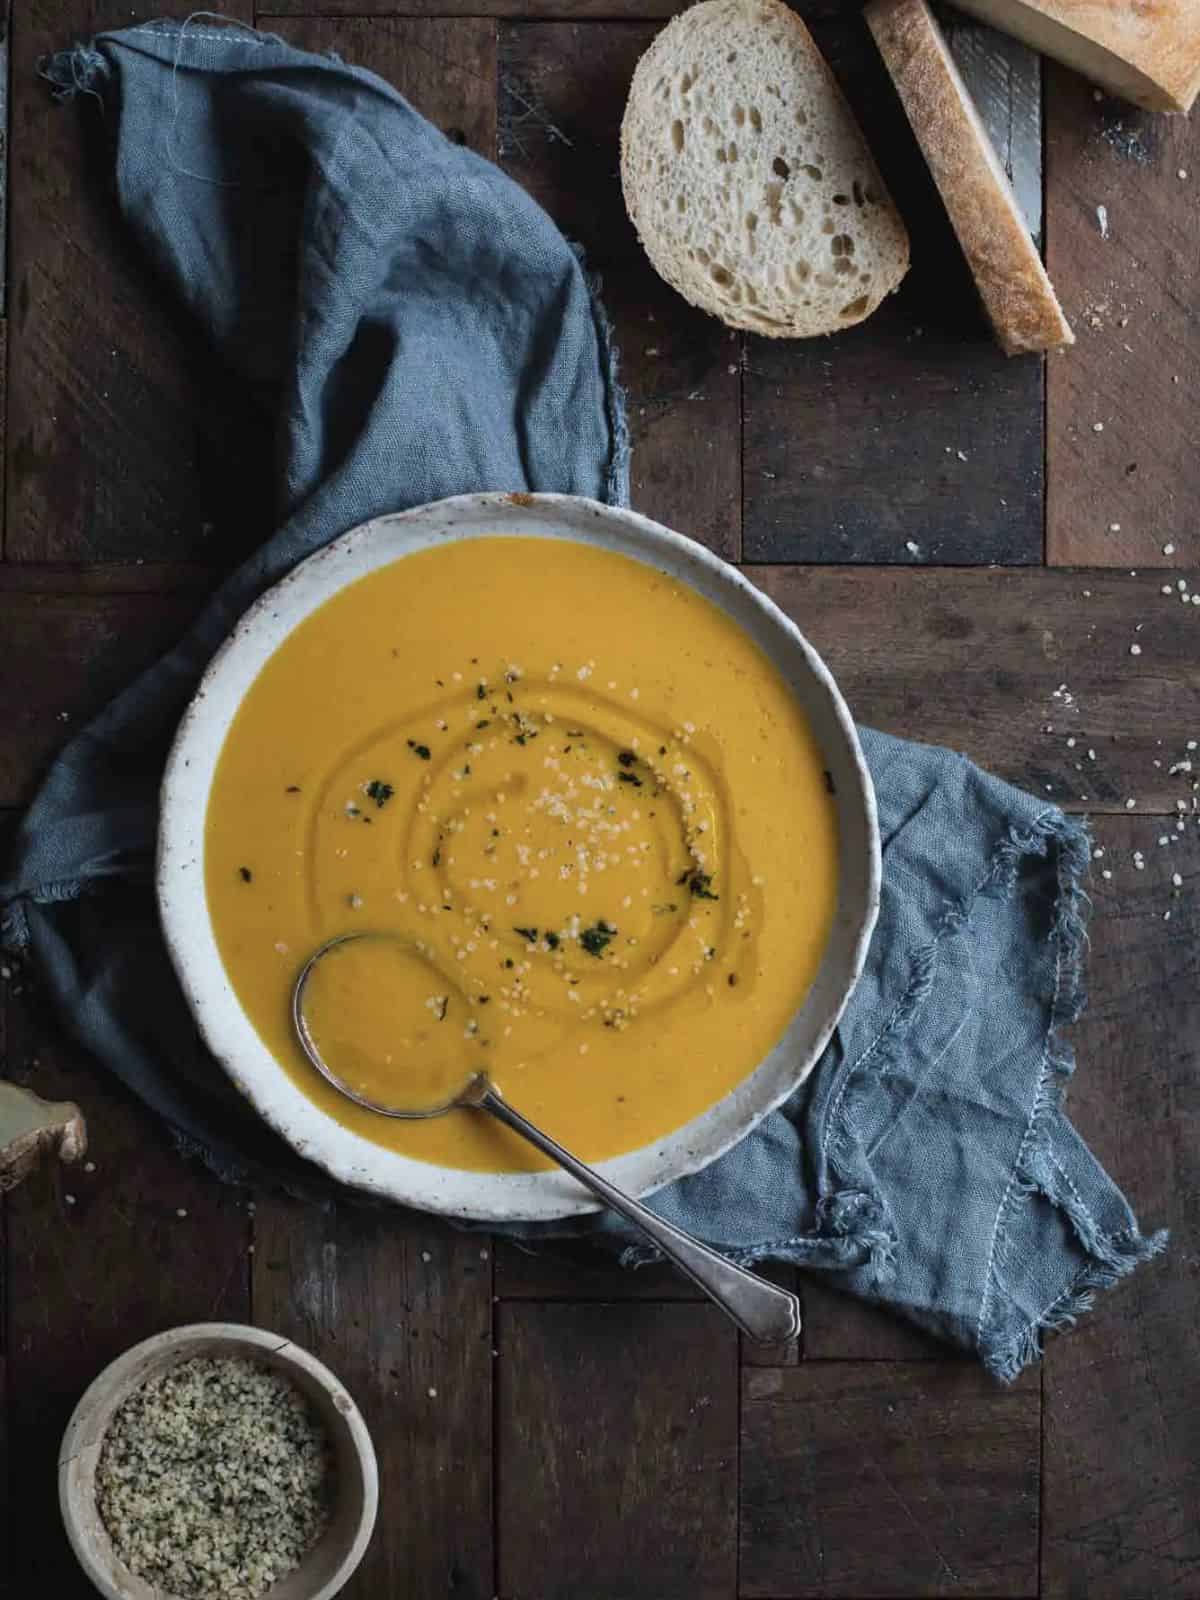 Pumpkin and lentil soup.
